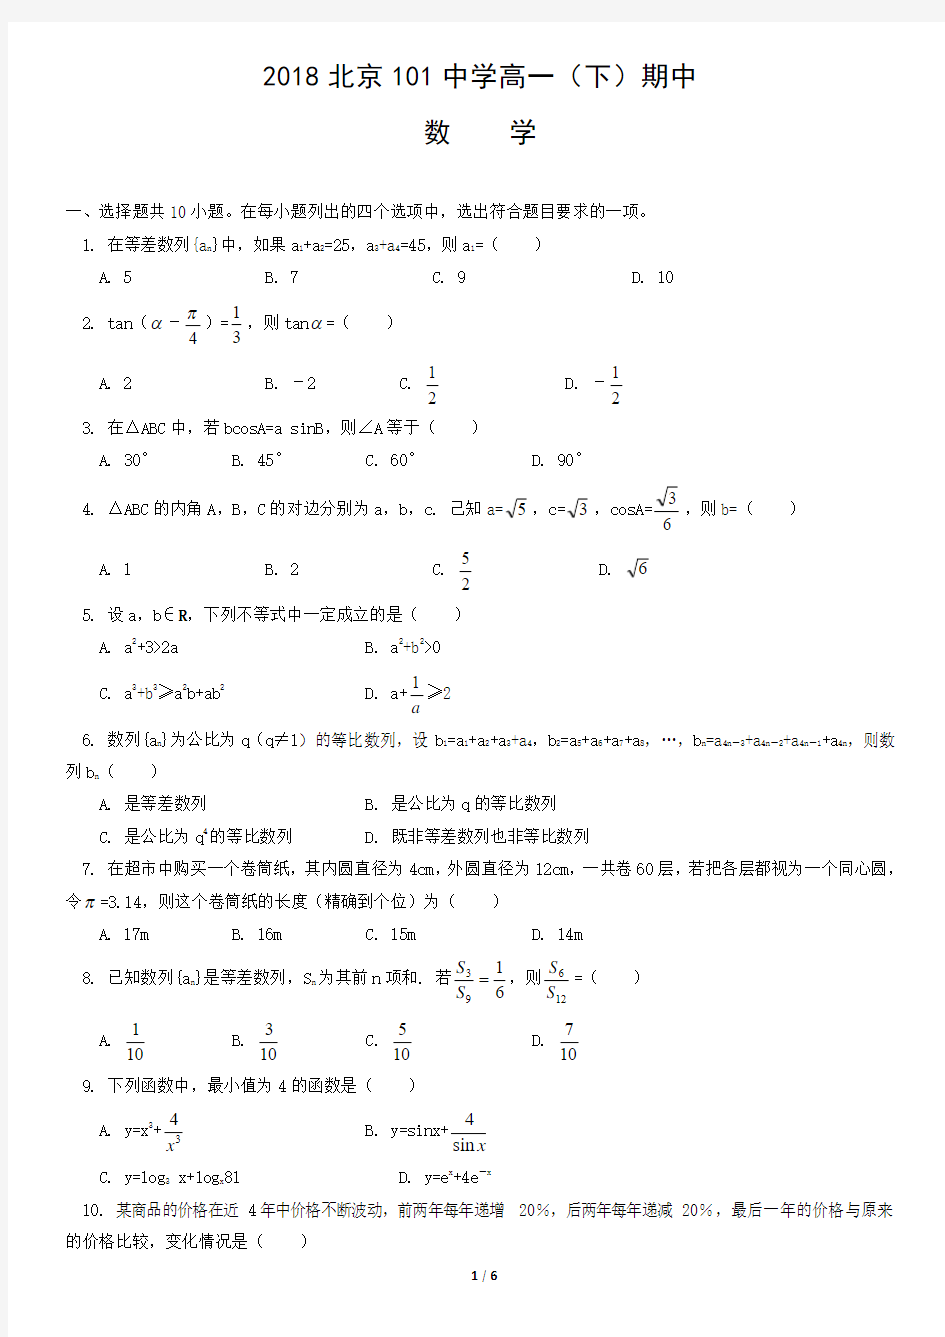 2018北京101中学高一(下)数学期中考试试卷